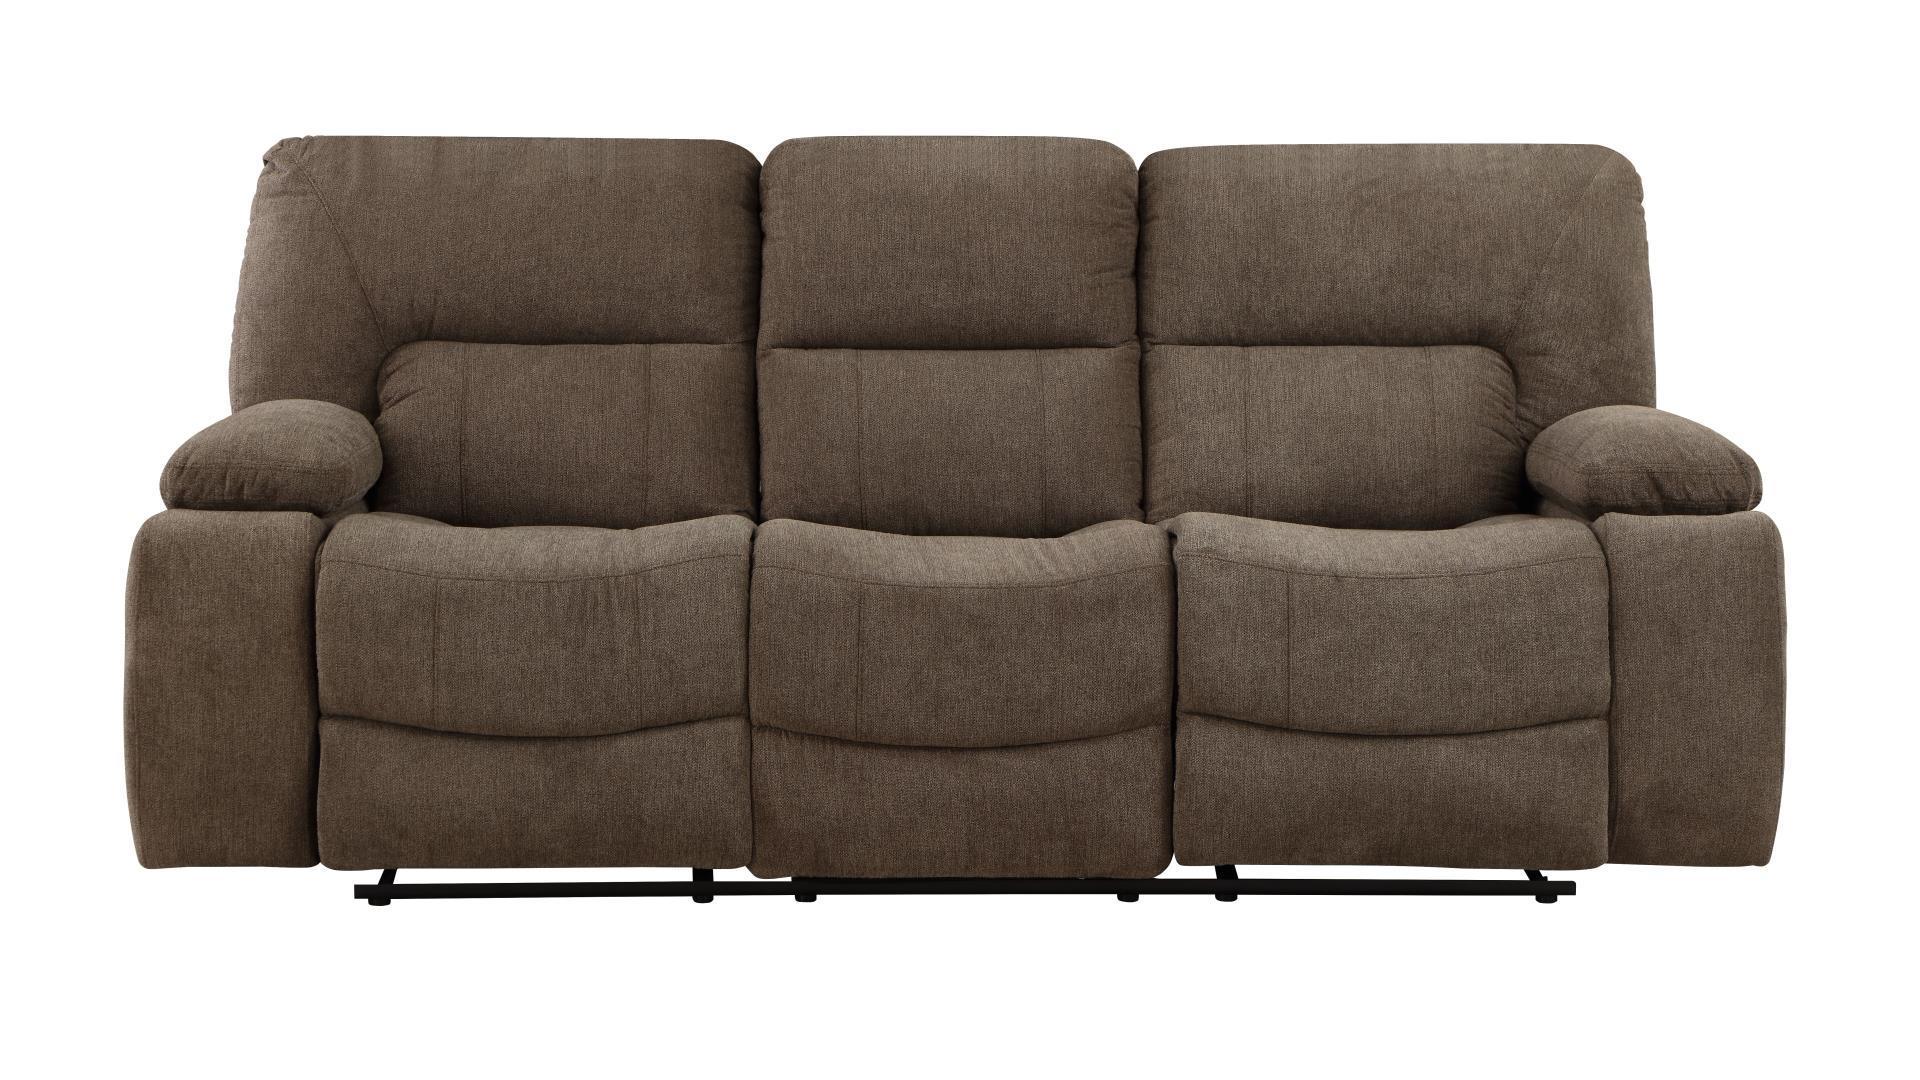 Contemporary, Modern Recliner Sofa OHIO-BR OHIO-BR-S in Brown Chenille